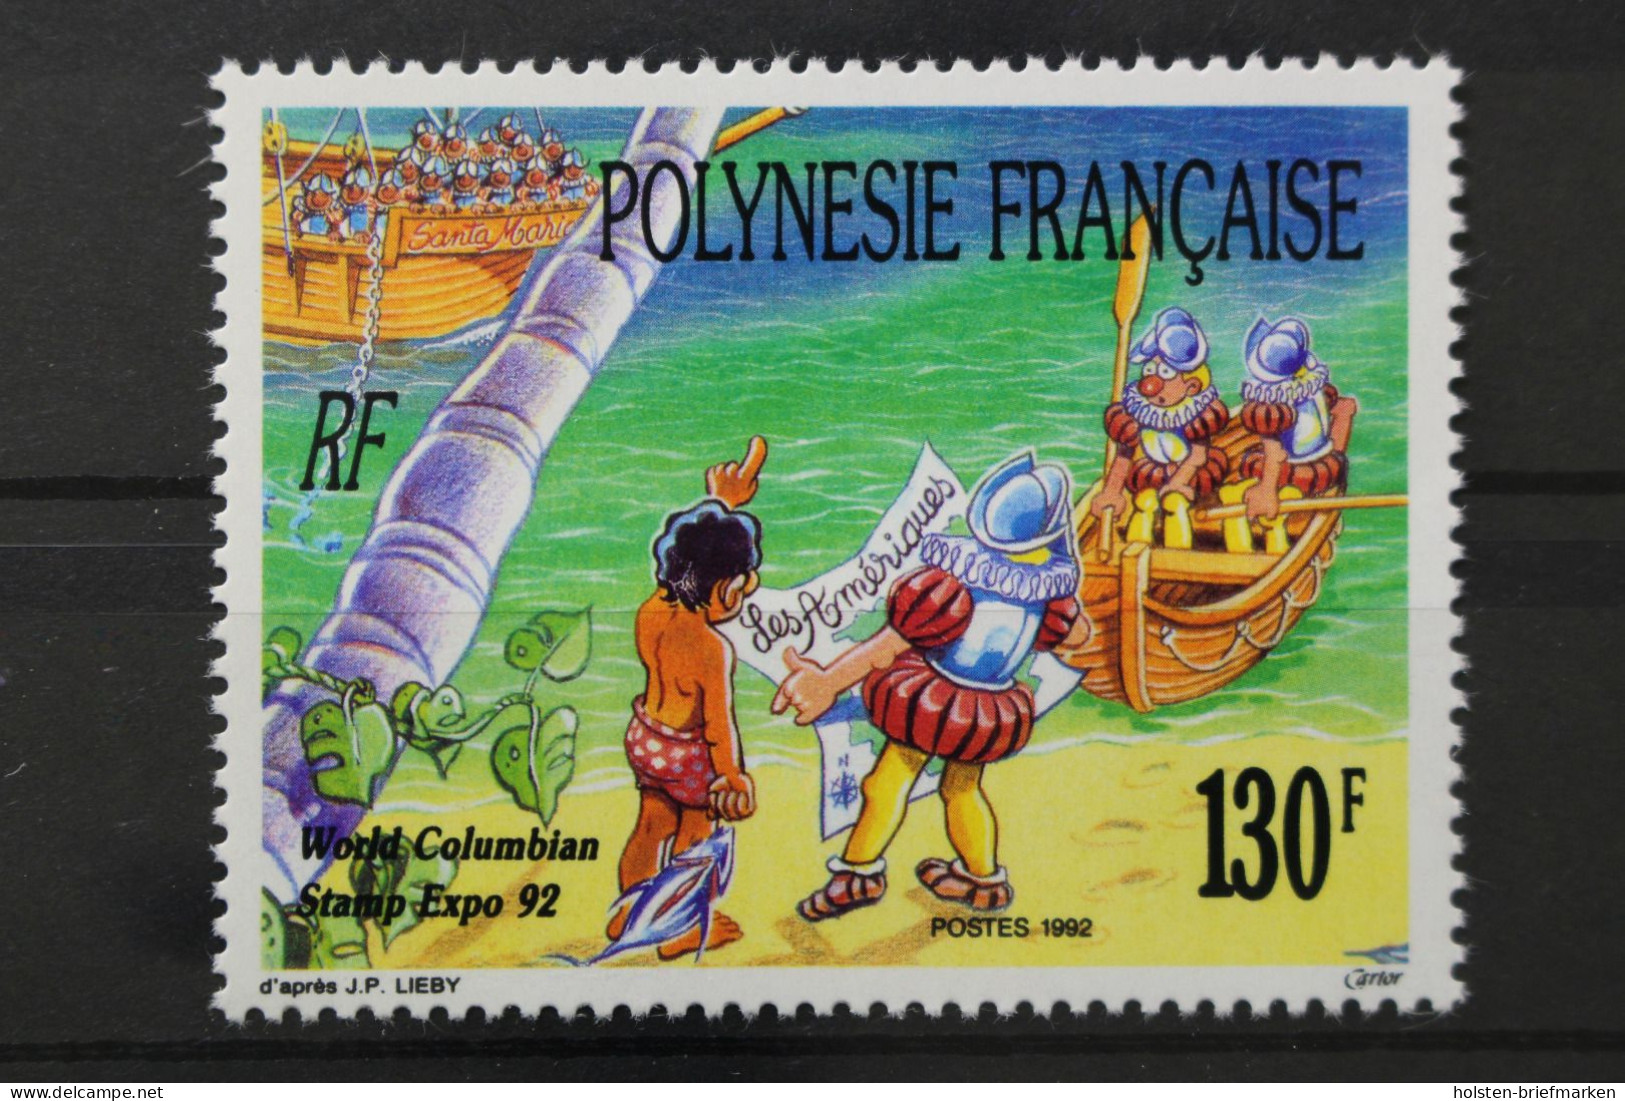 Französisch-Polynesien, MiNr. 609, Postfrisch - Nuevos